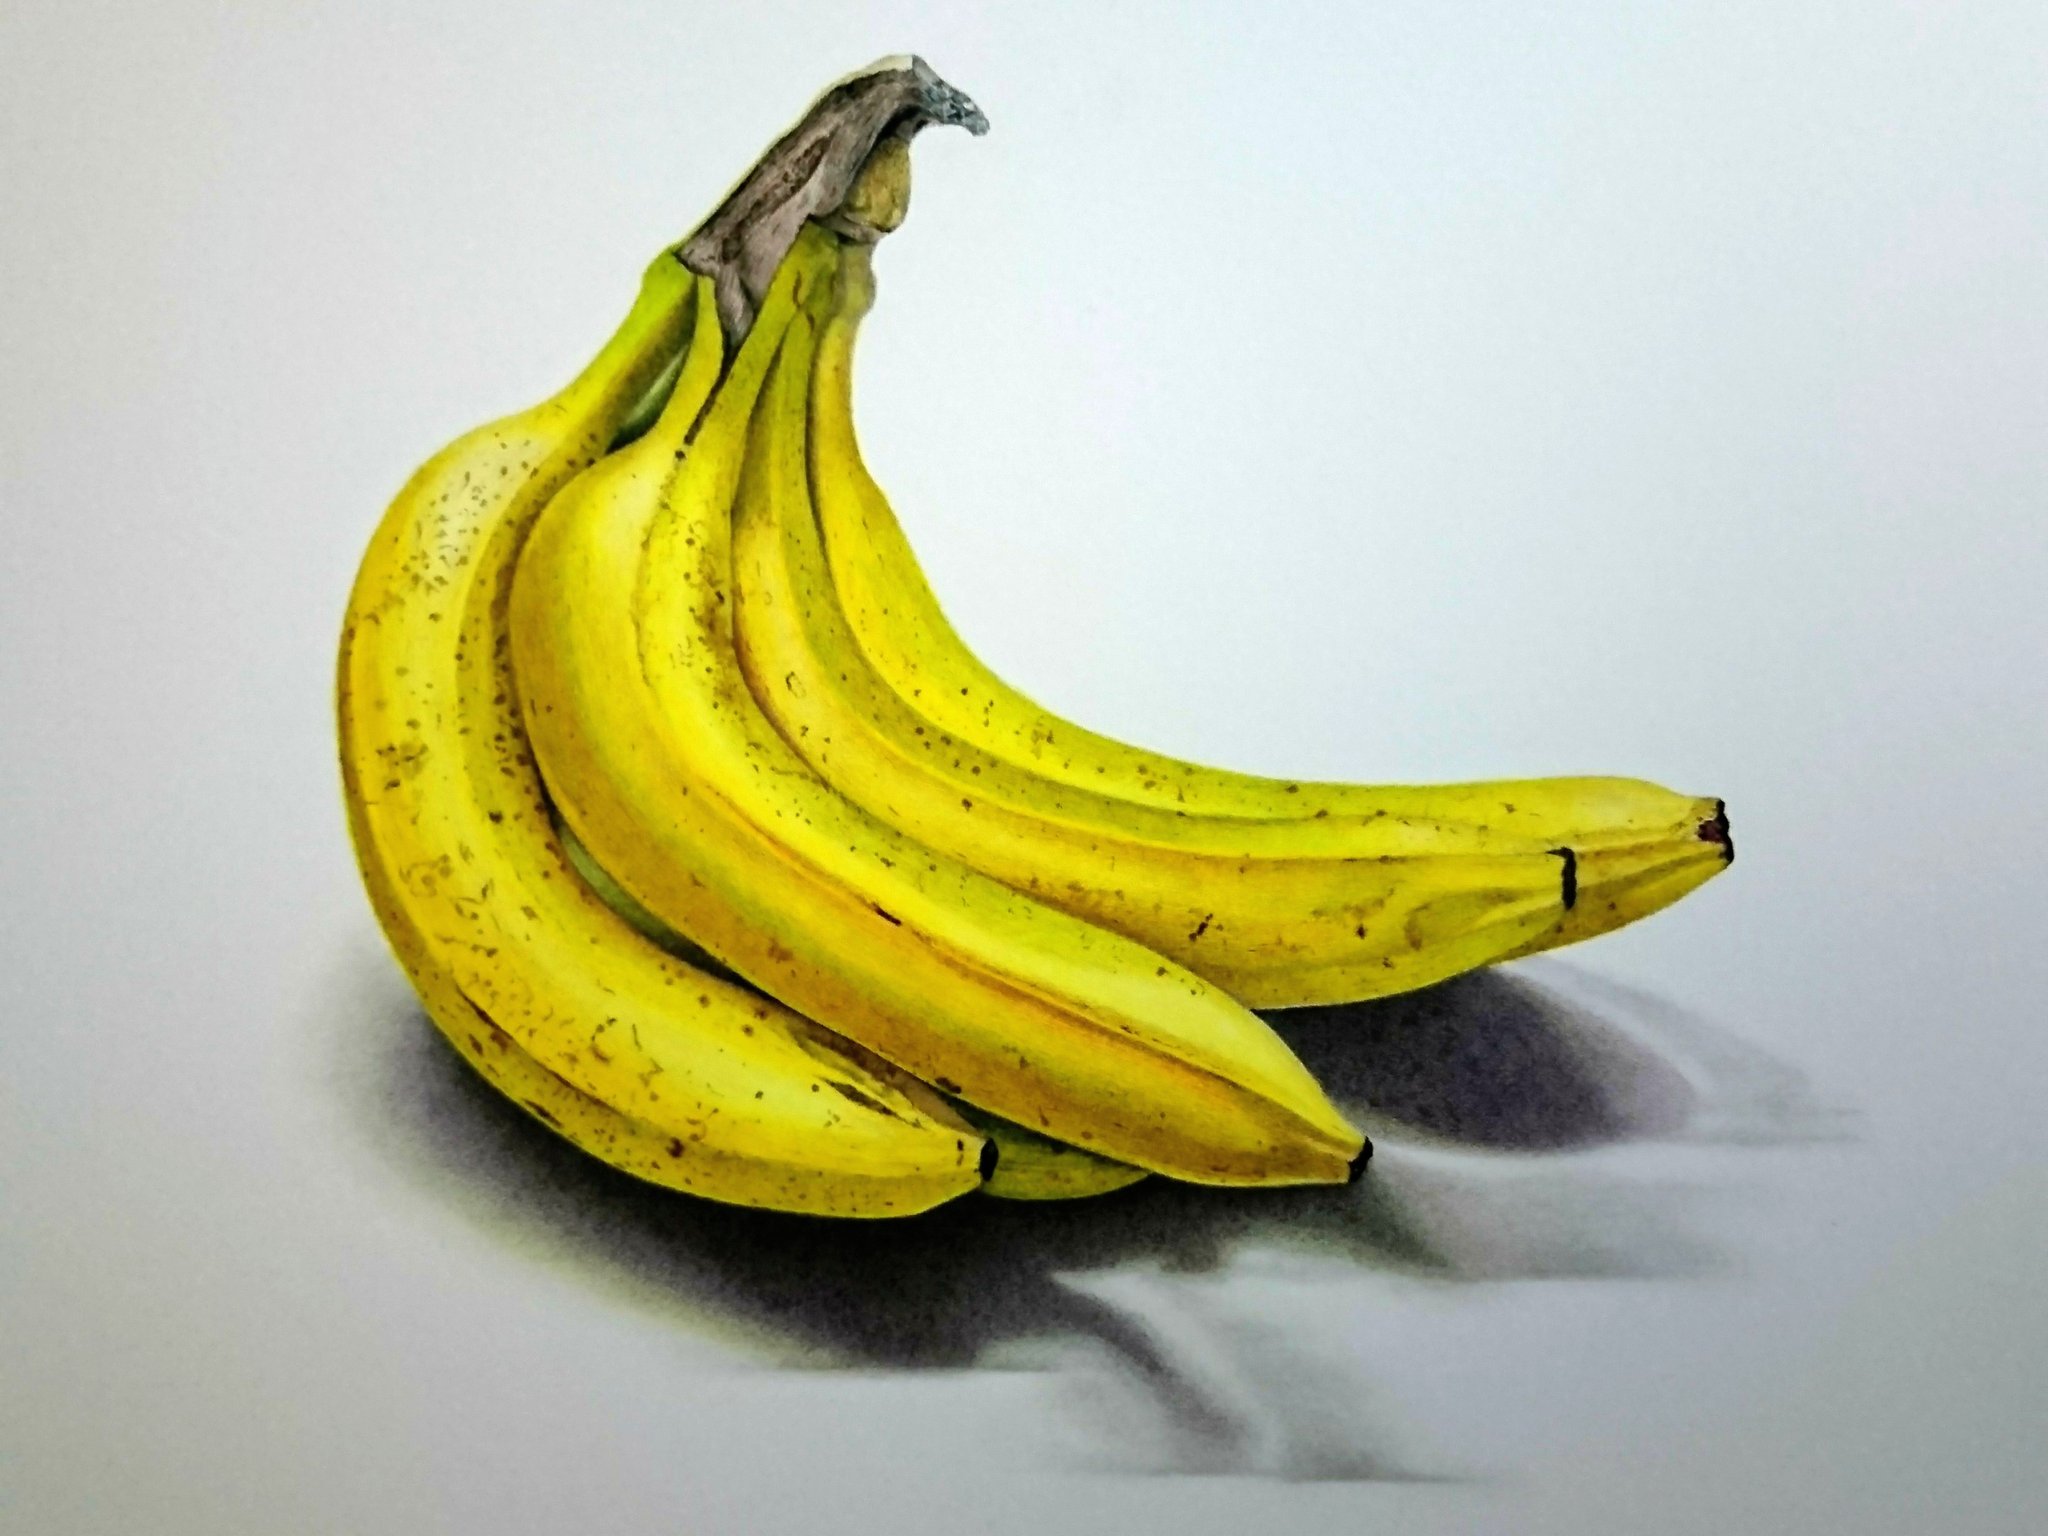 三賀 亮介 ミカ リョウスケ 色鉛筆画 色鉛筆 イラスト 写実絵画 具象画 バナナ 絵描きさんと繋がりたい アート 芸術同盟 アナログ アナログイラスト リアル 静物画 拡散 絵 Drawing 色鉛筆でバナナを描きました 今回は写実を重視してい